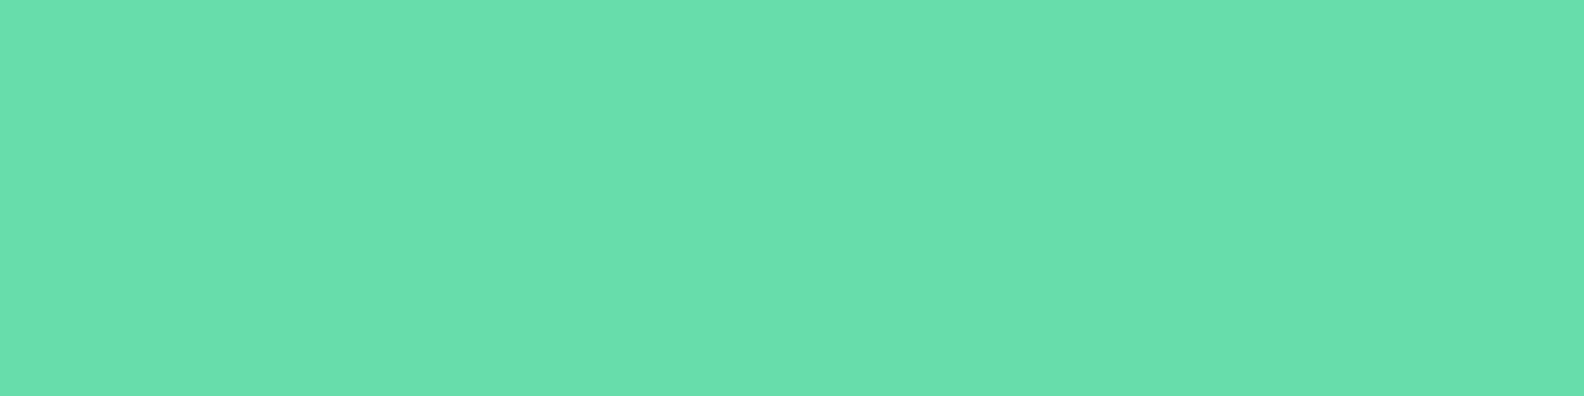 1584x396 Medium Aquamarine Solid Color Background